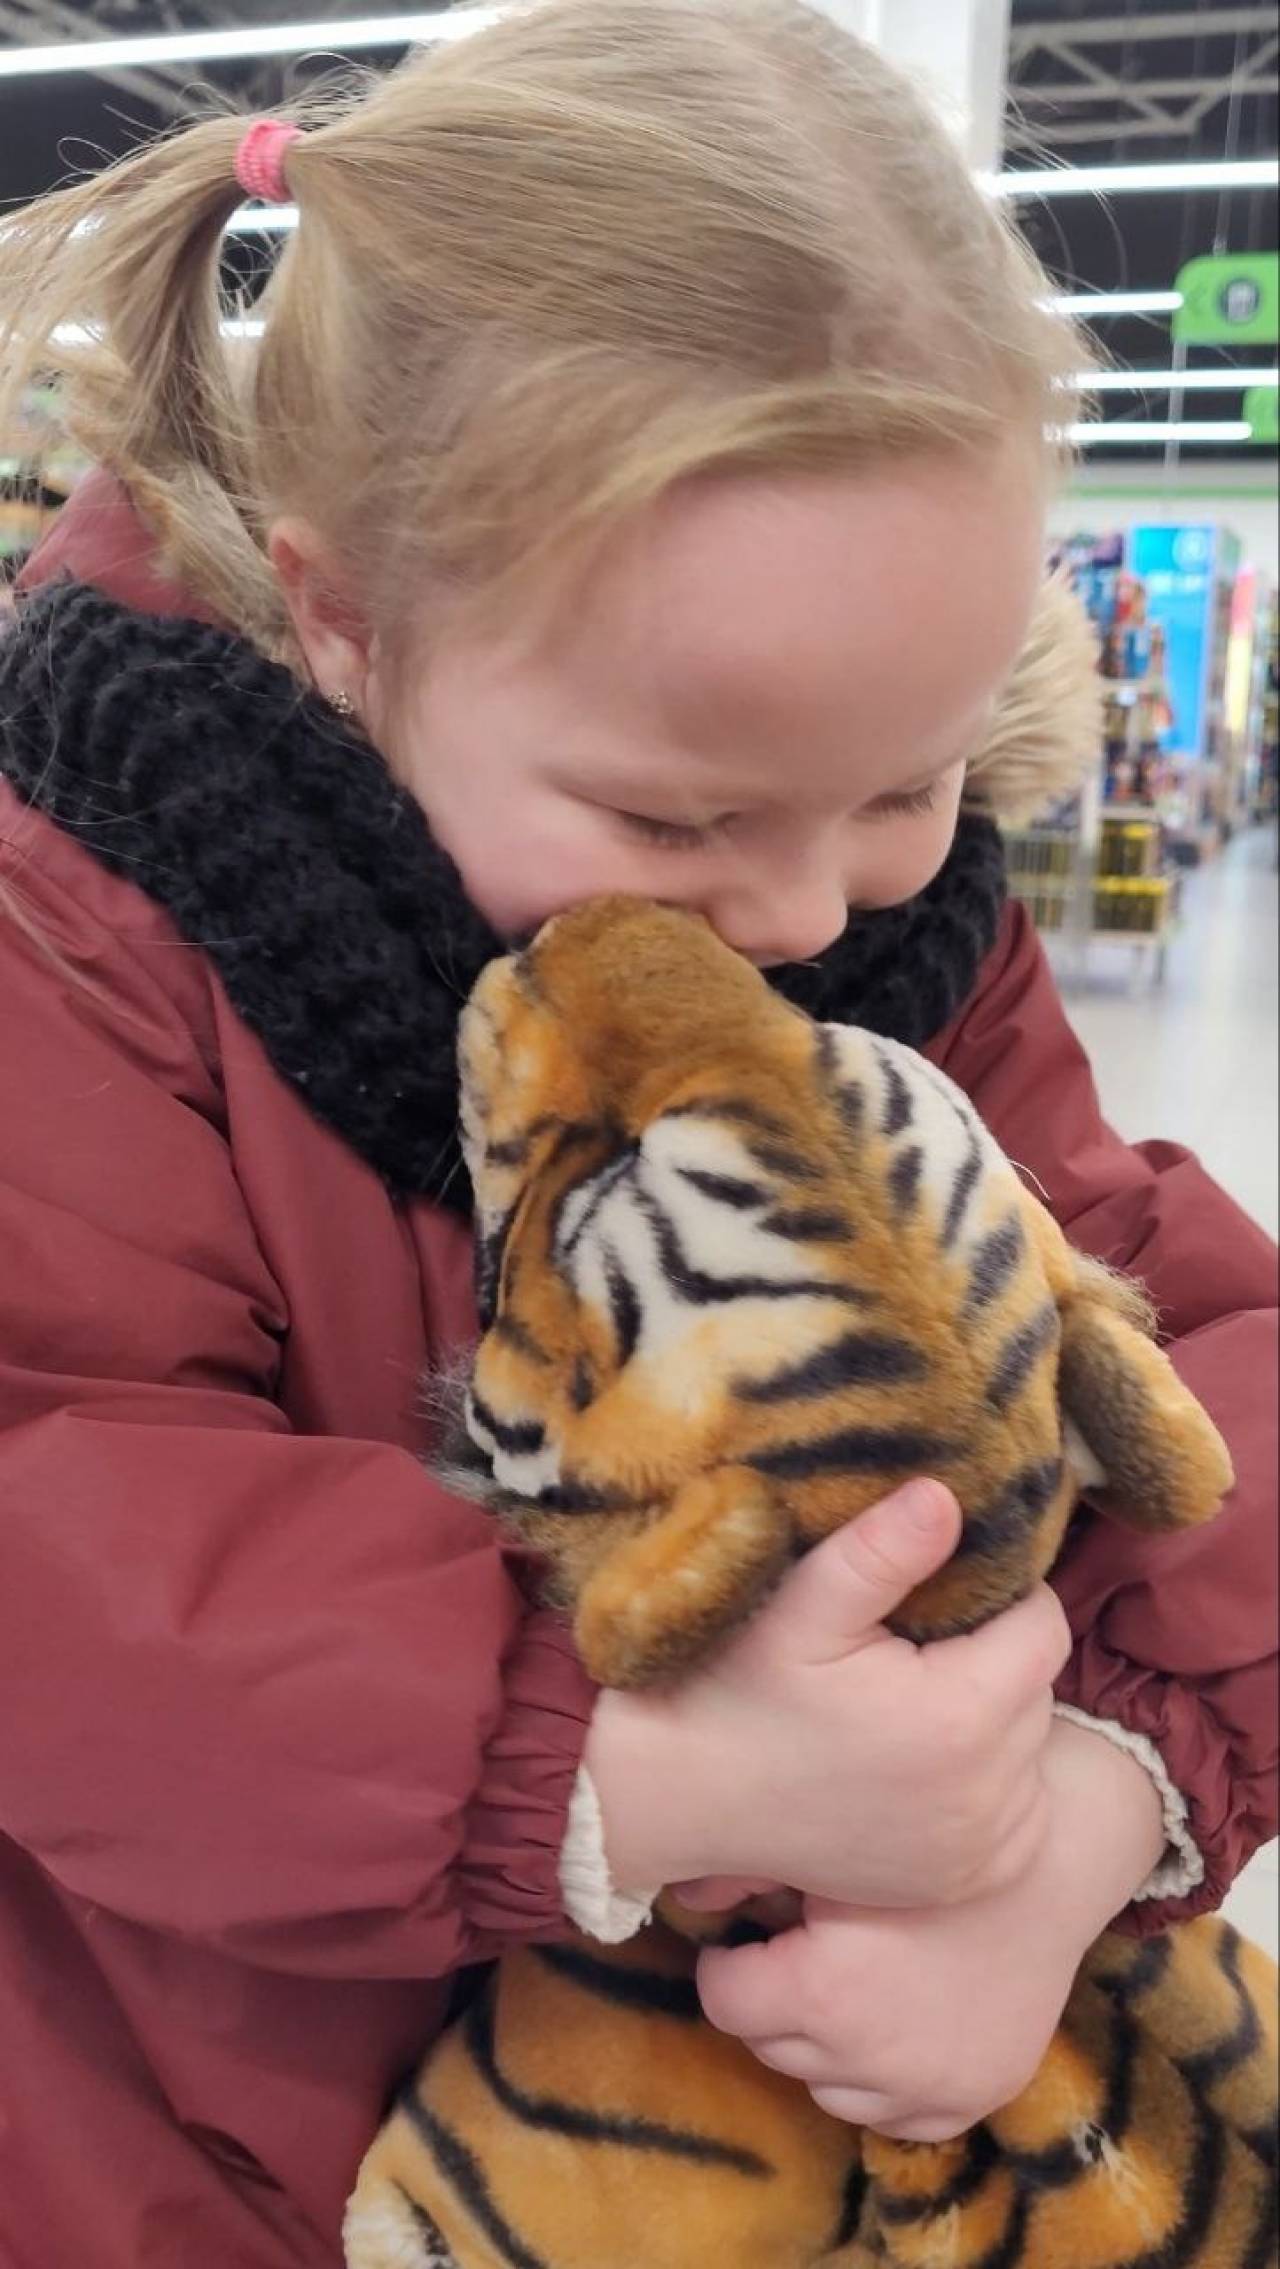 Тигр, который не продаётся: маленькая гродненка два года мечтала о плюшевой игрушке из магазина, которую нельзя было купить. Но случился happy end